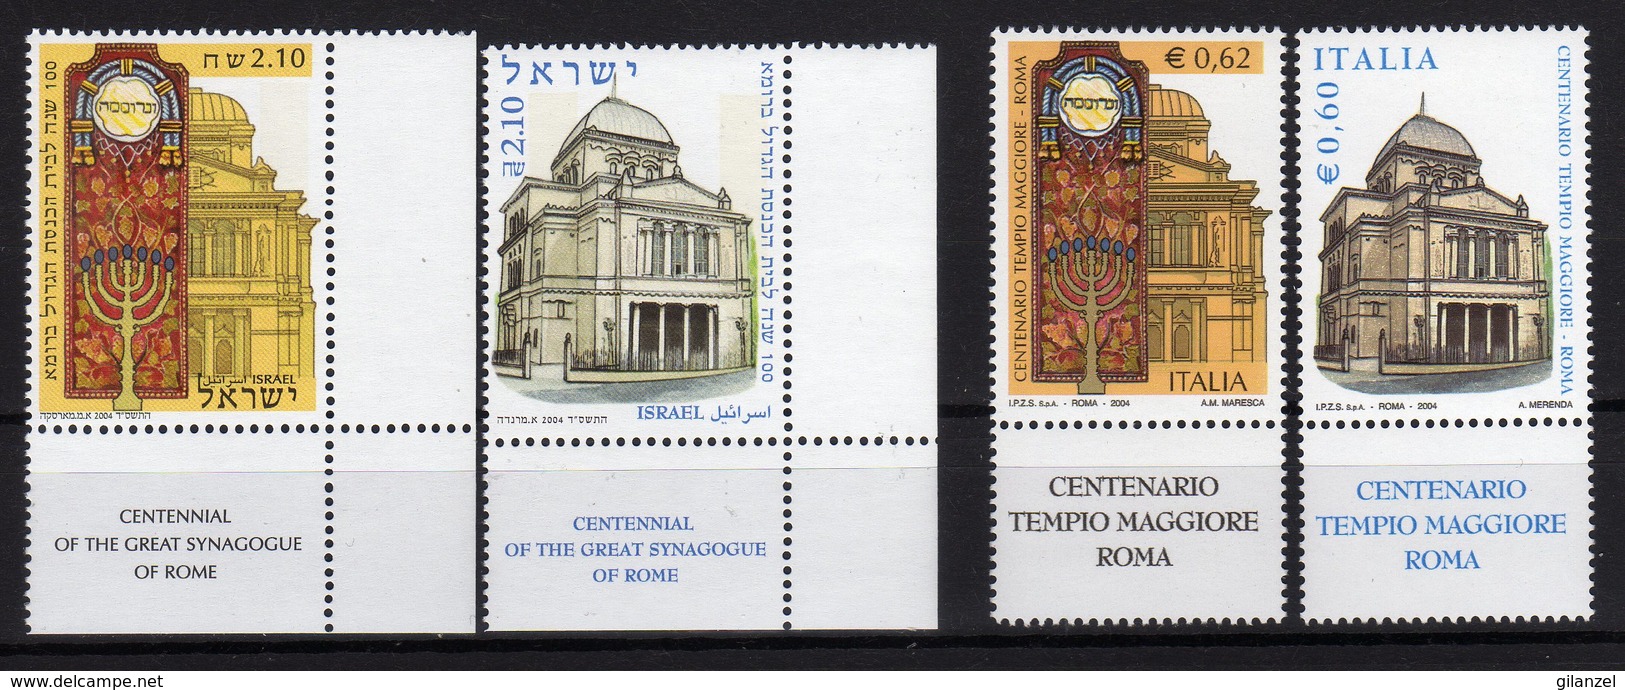 2004 Emissione Congiunta Joint Issue Italia Israele Centenario Tempio Maggiore 4 Stamps MNH - Emissioni Congiunte